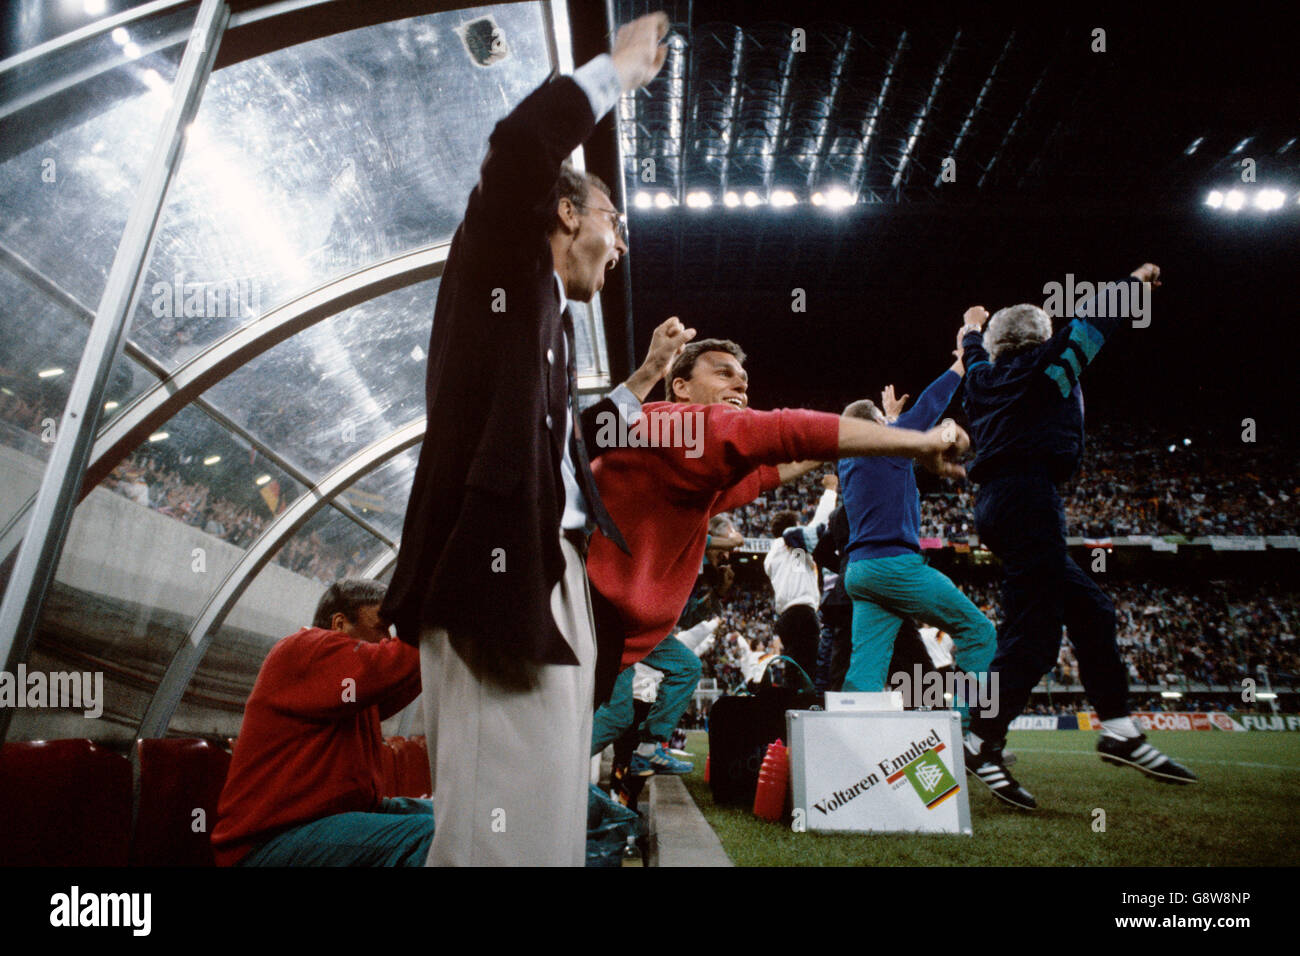 Calcio - Coppa del Mondo di Calcio Italia 1990 - Gruppo D - Germania Ovest v Iugoslavia - Stadio Giuseppe Meazza Foto Stock